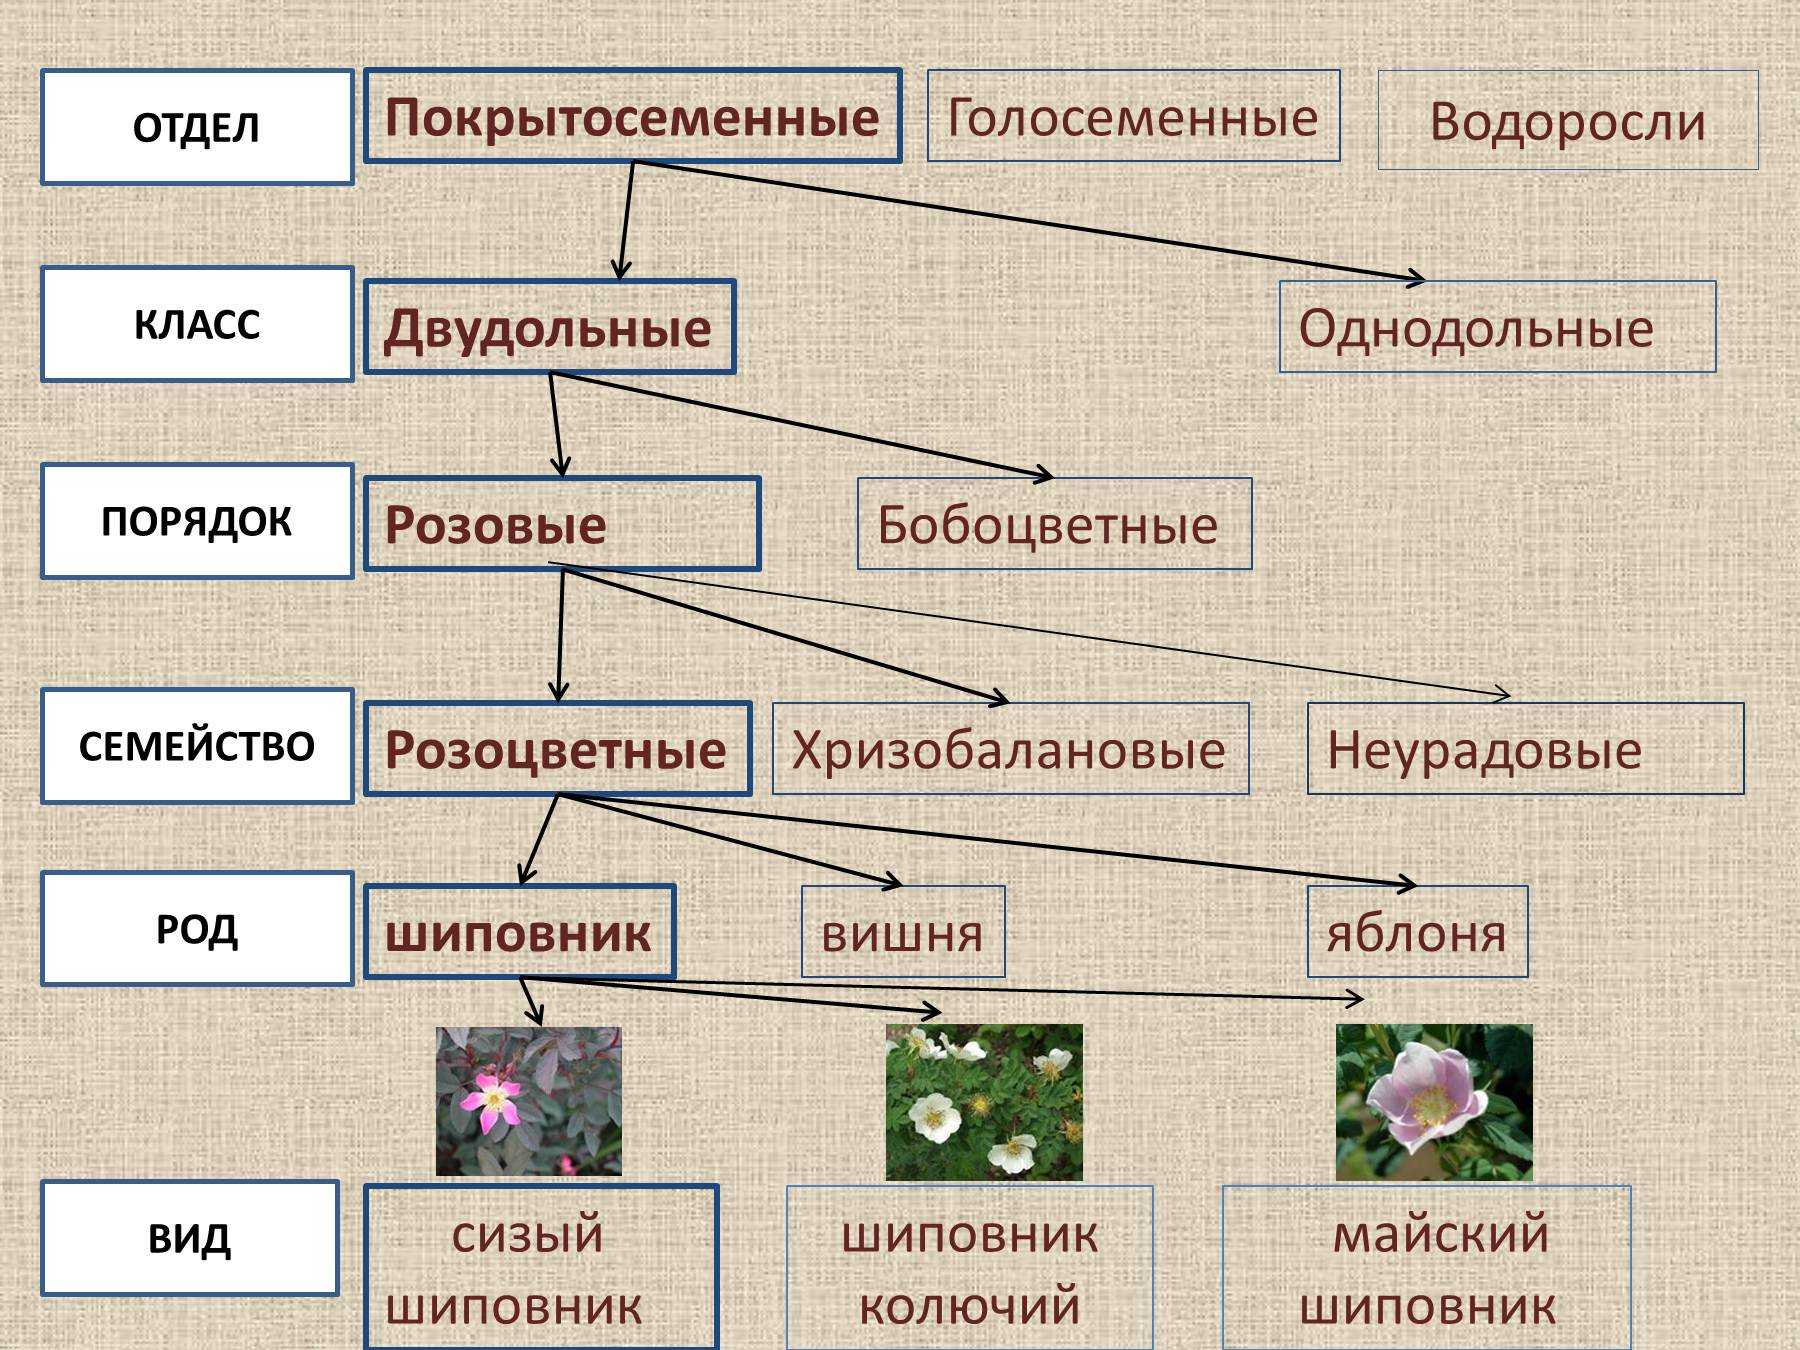 Последовательность появления покрытосеменных. Систематика растений царство отделы. Царство растений отделы классы схема. Систематика царства растений схема. Систематика растений отдел Покрытосеменные классы порядок.